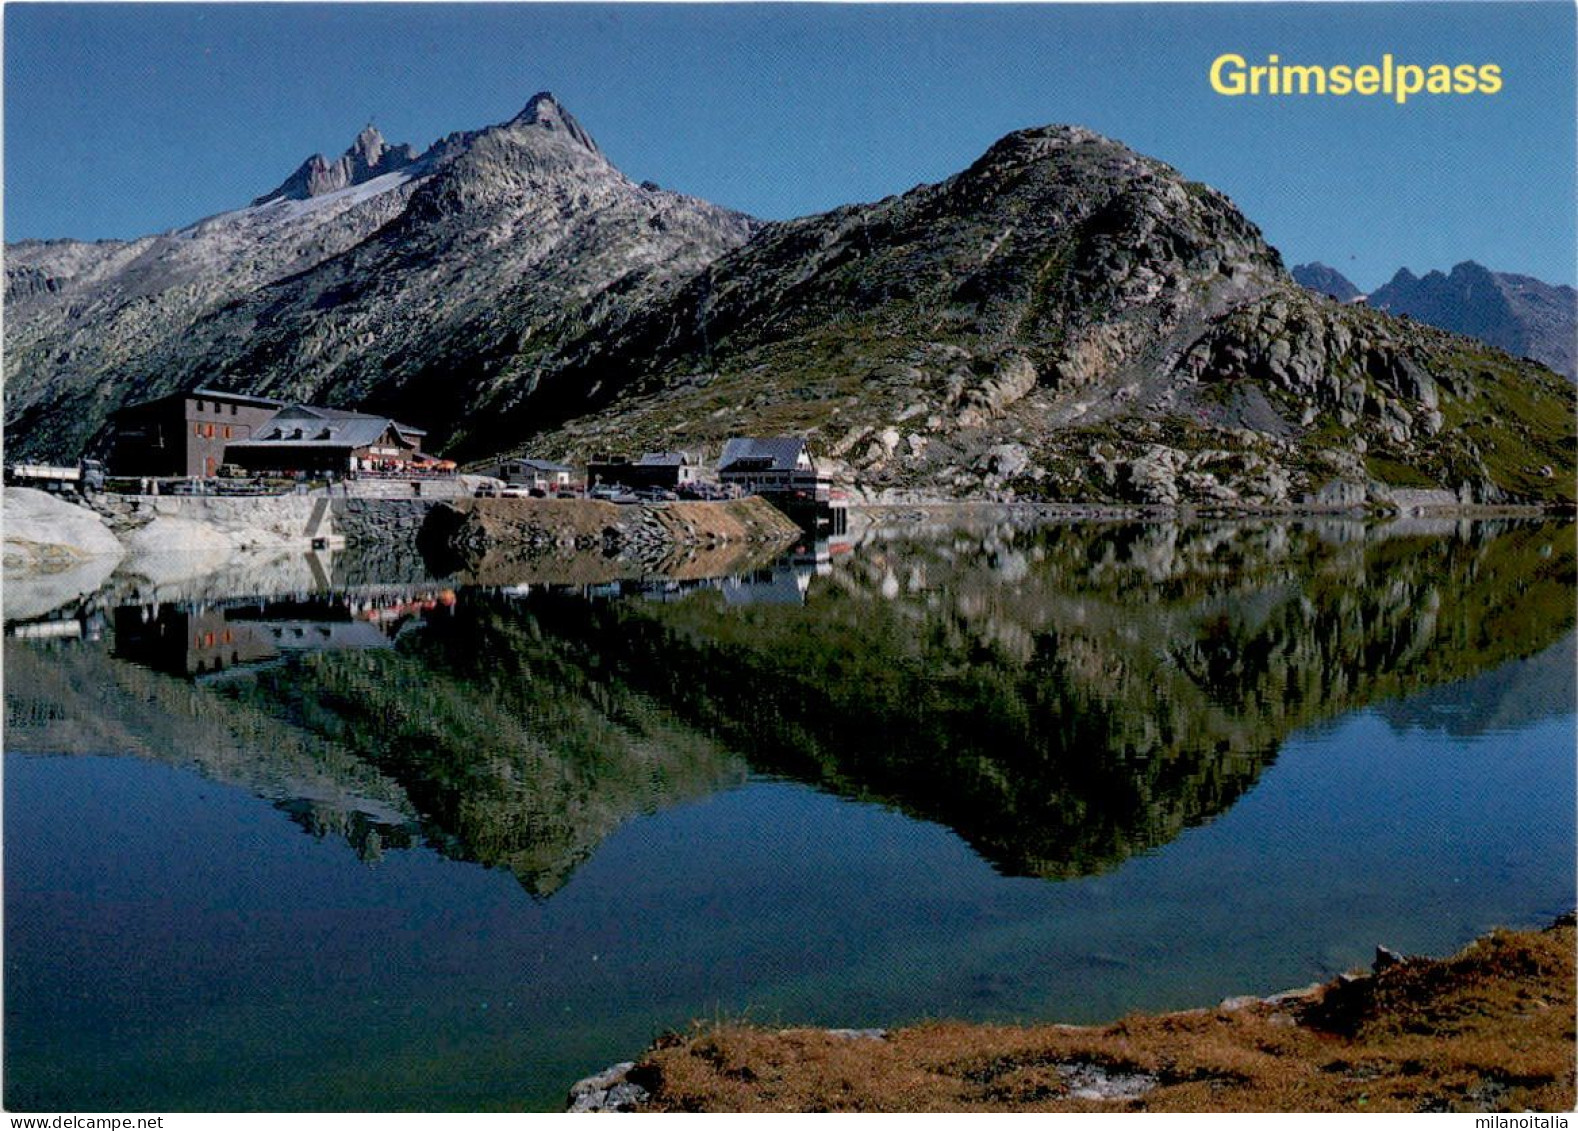 Grimselpass (43806) - Guttannen